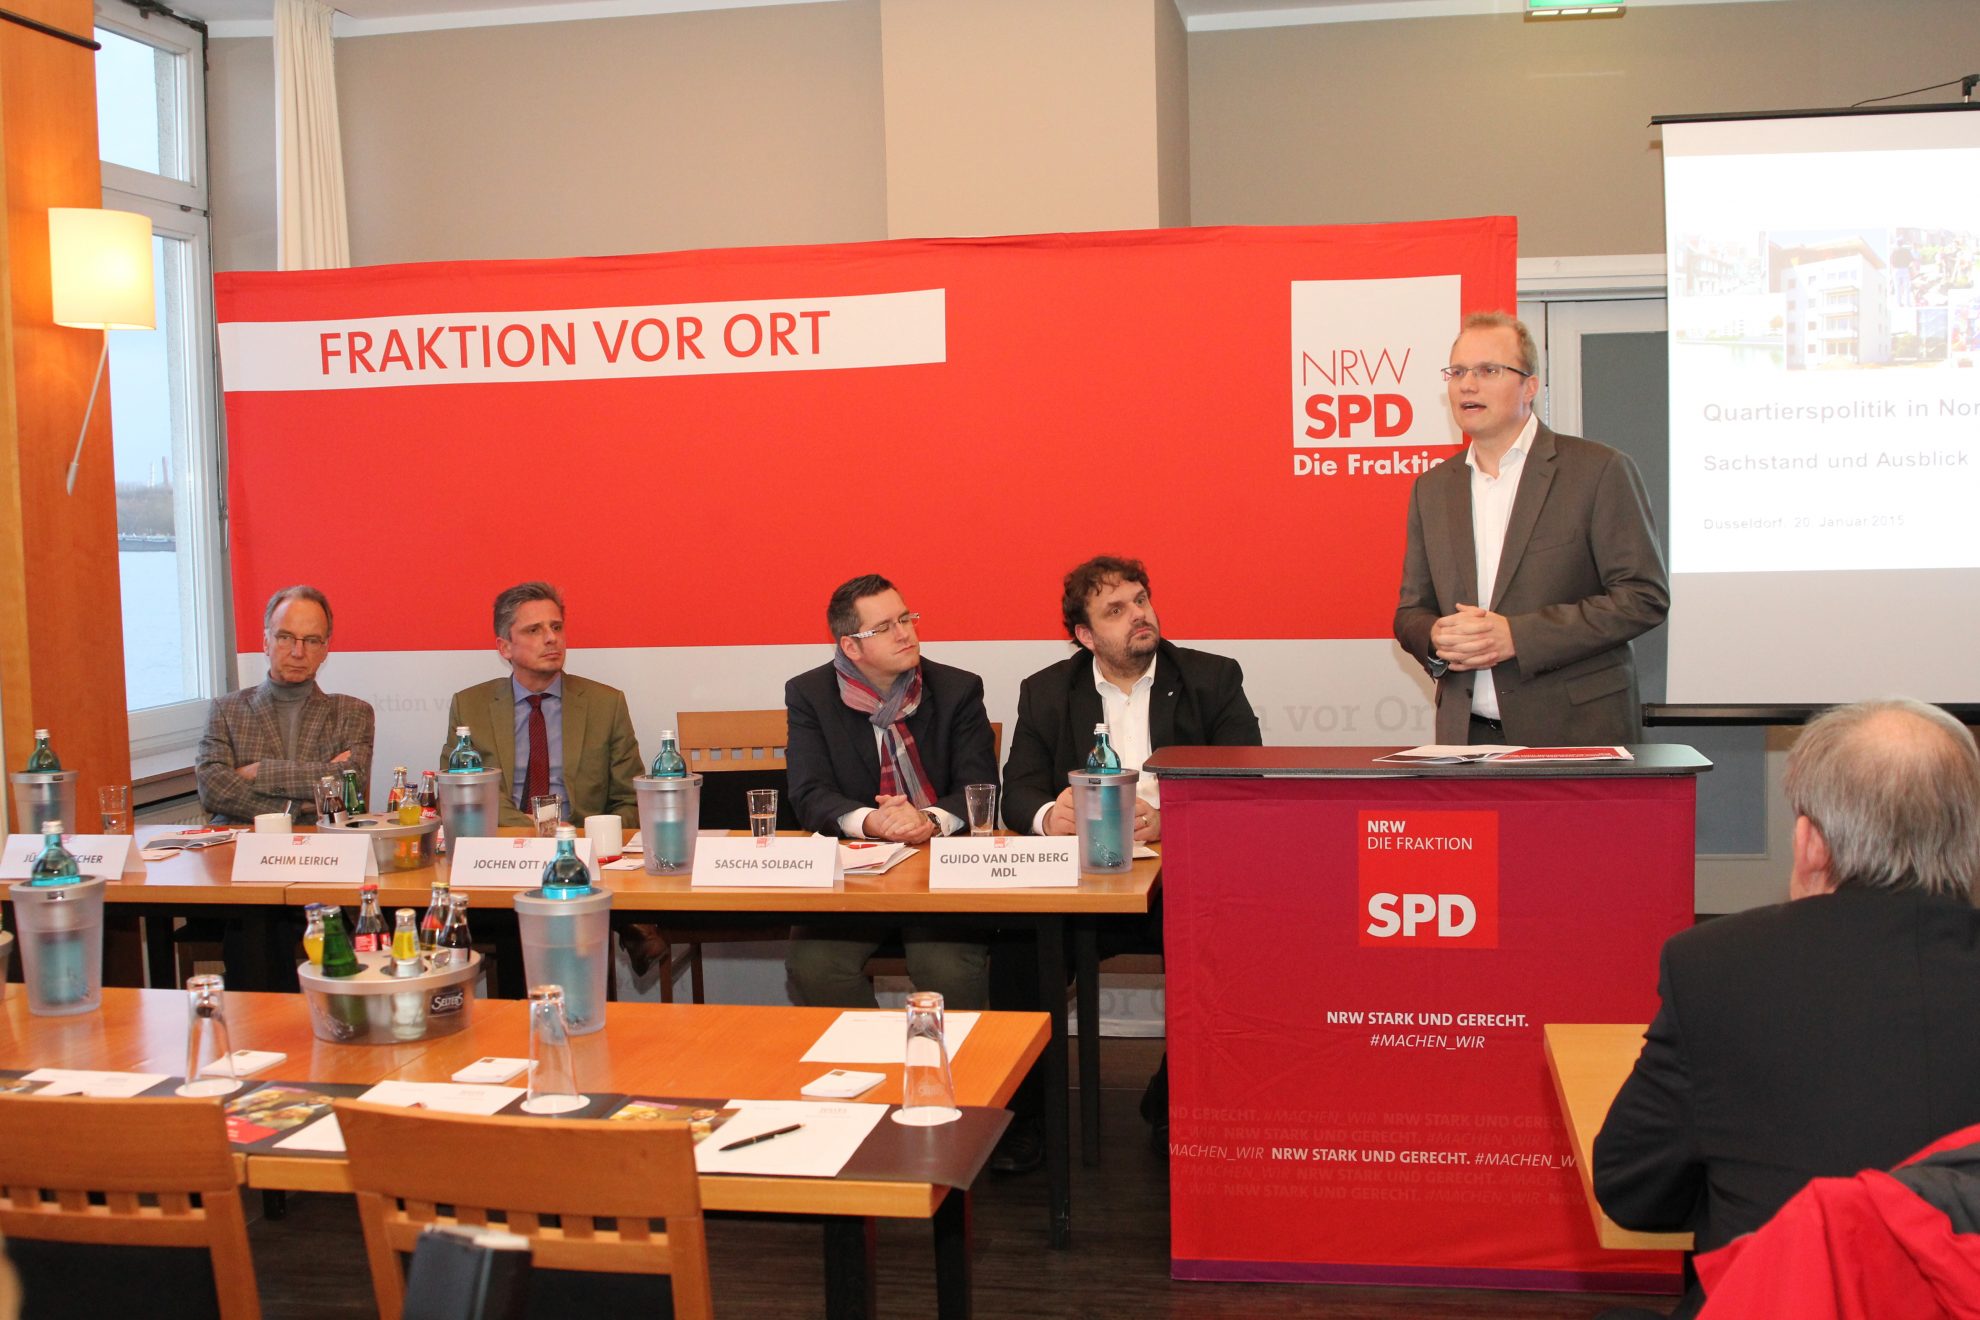 Jürgen Becher, Achim Leirich, Sascha Solbach, Guido van den Berg MdL und Jochen Ott MdL